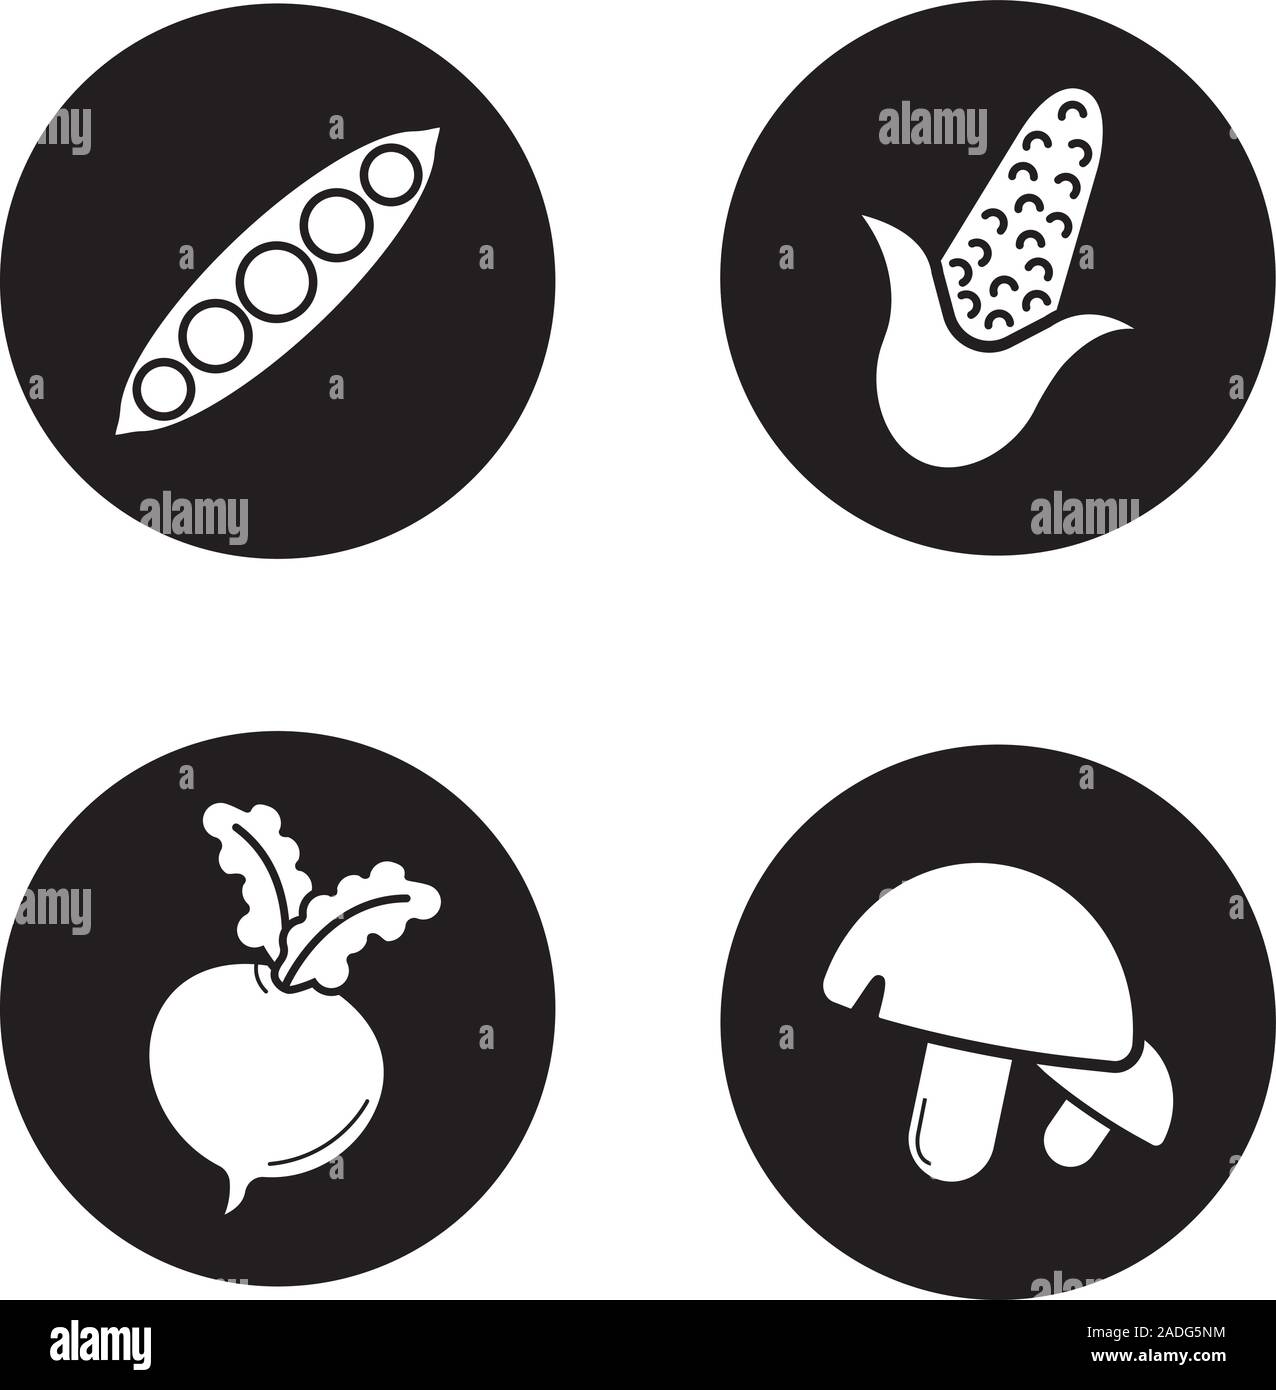 Légumes icons set. Ouvrir pea pod, maïs, betterave, les champignons. Vector silhouettes blanc illustrations de cercles noirs Illustration de Vecteur